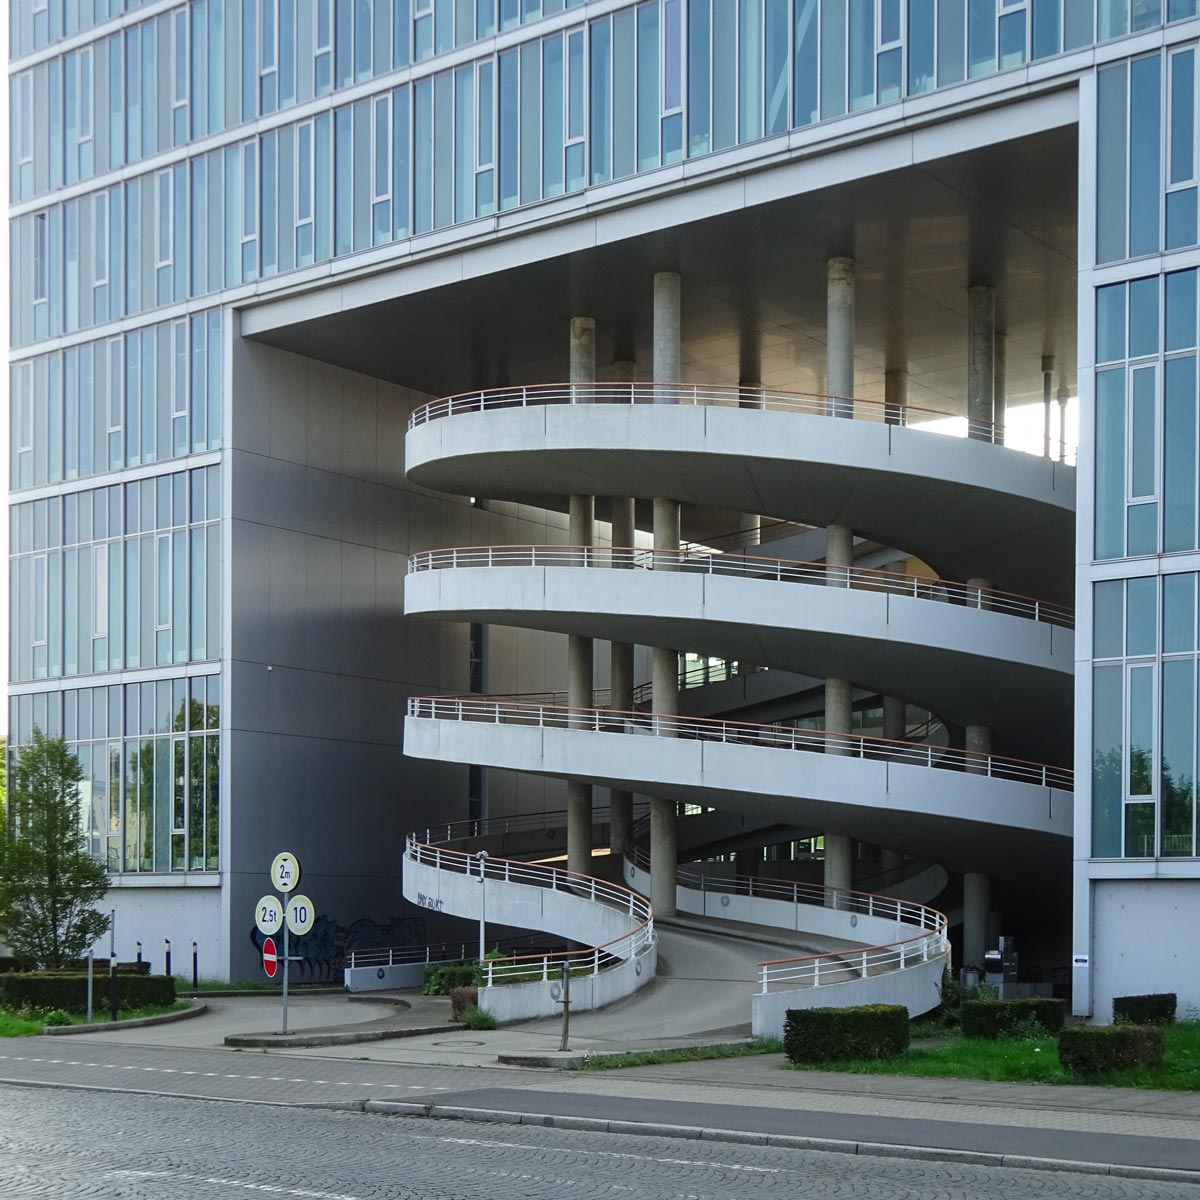 Gebäude in Frankfurt-Fechenheim mit Glasfassade und Blick auf die schneckenförmige Auffahrt